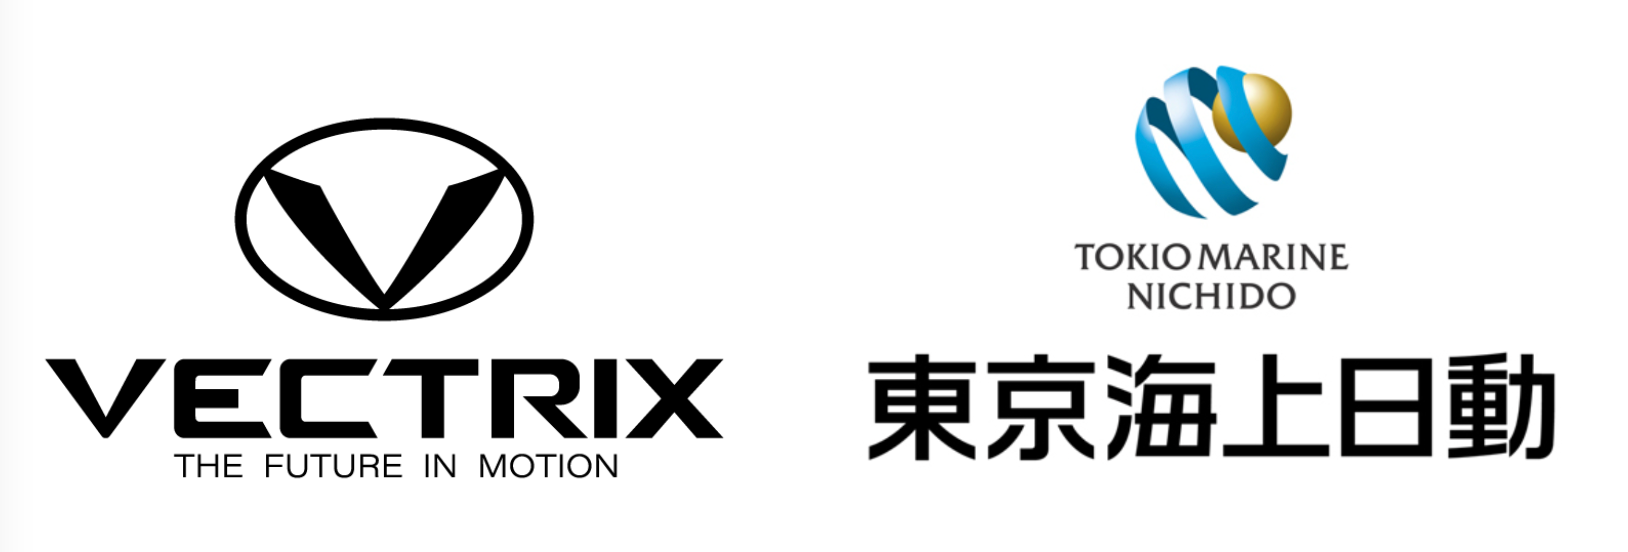 【プレスリリース】東京海上日動と協業契約を締結。四輪規準のユーザーサポート体制の構築と、開発・生産・販売における長期的な共生のための戦略的な協業に向けた検討を開始